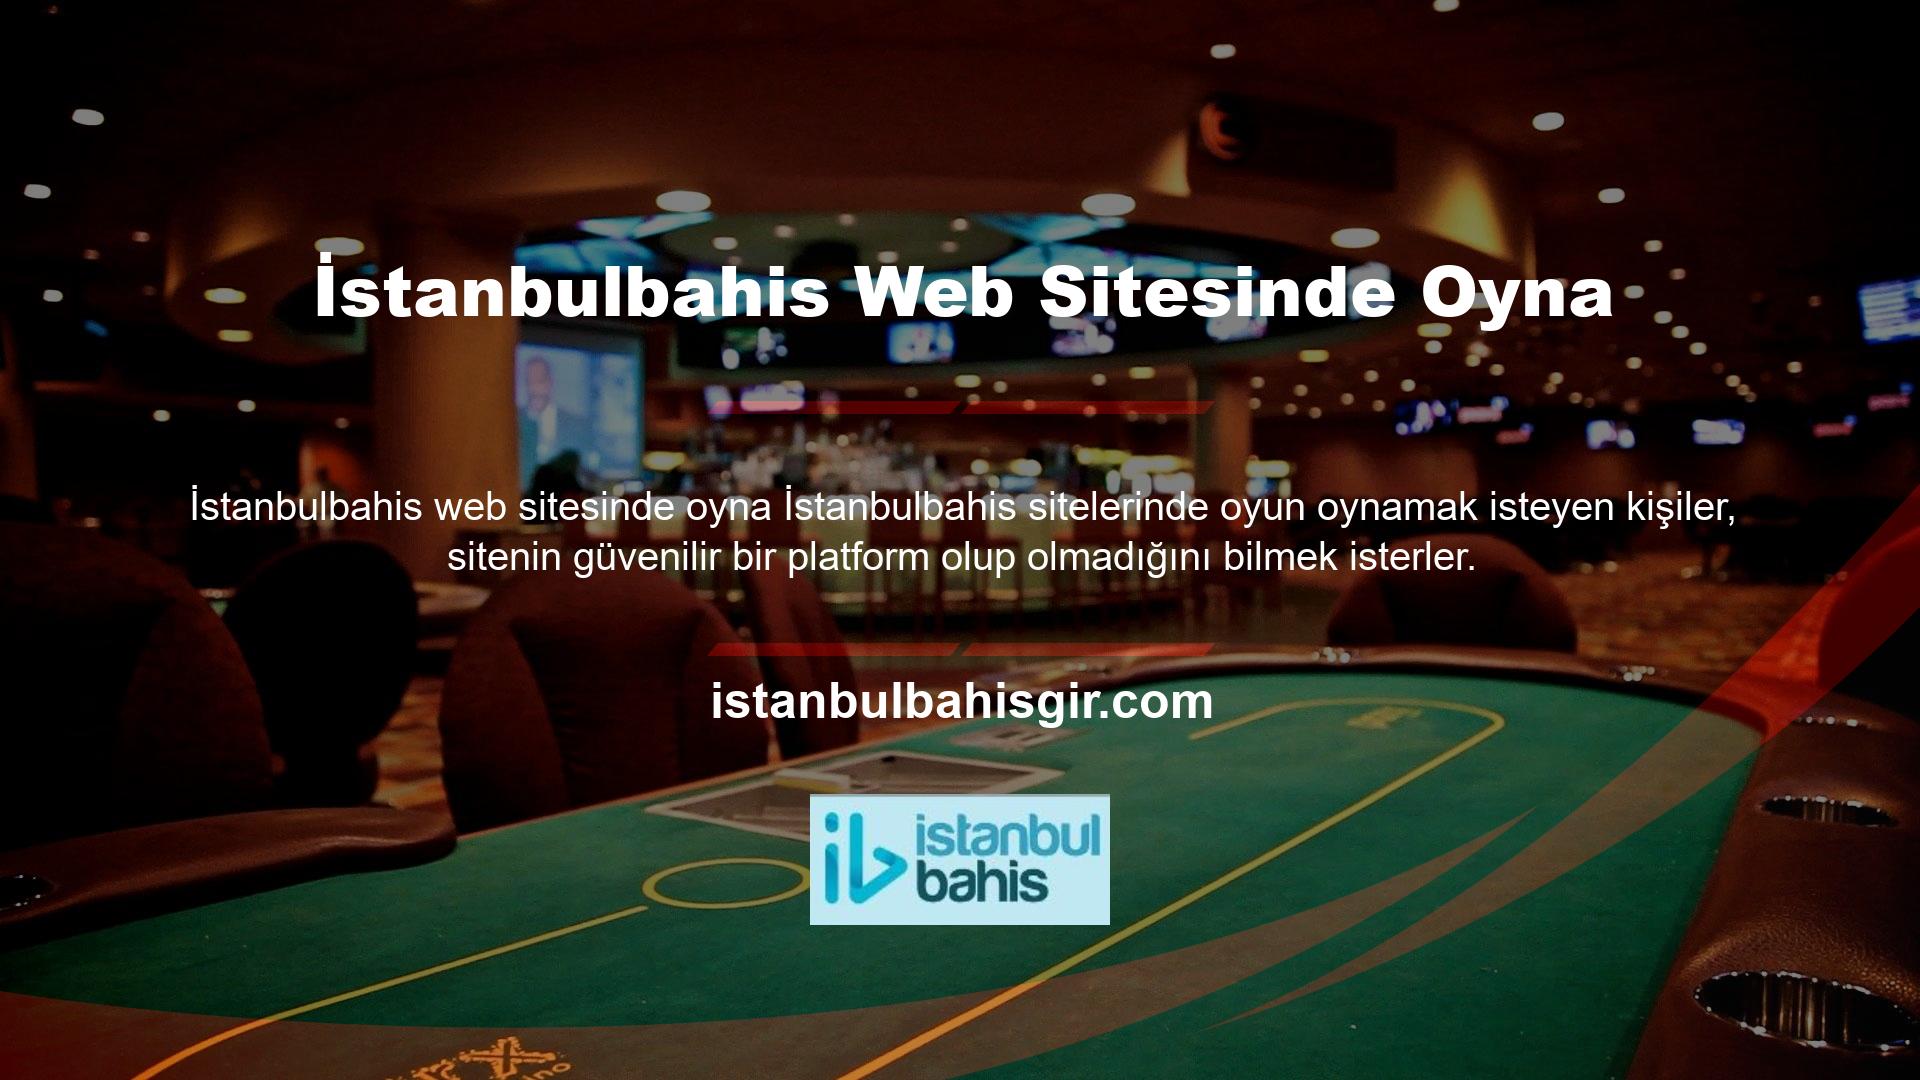 İstanbulbahis güvenebilir misin? Araştırmalarım sırasında bu sitenin oldukça güvenilir bir platform olduğunu gördüm